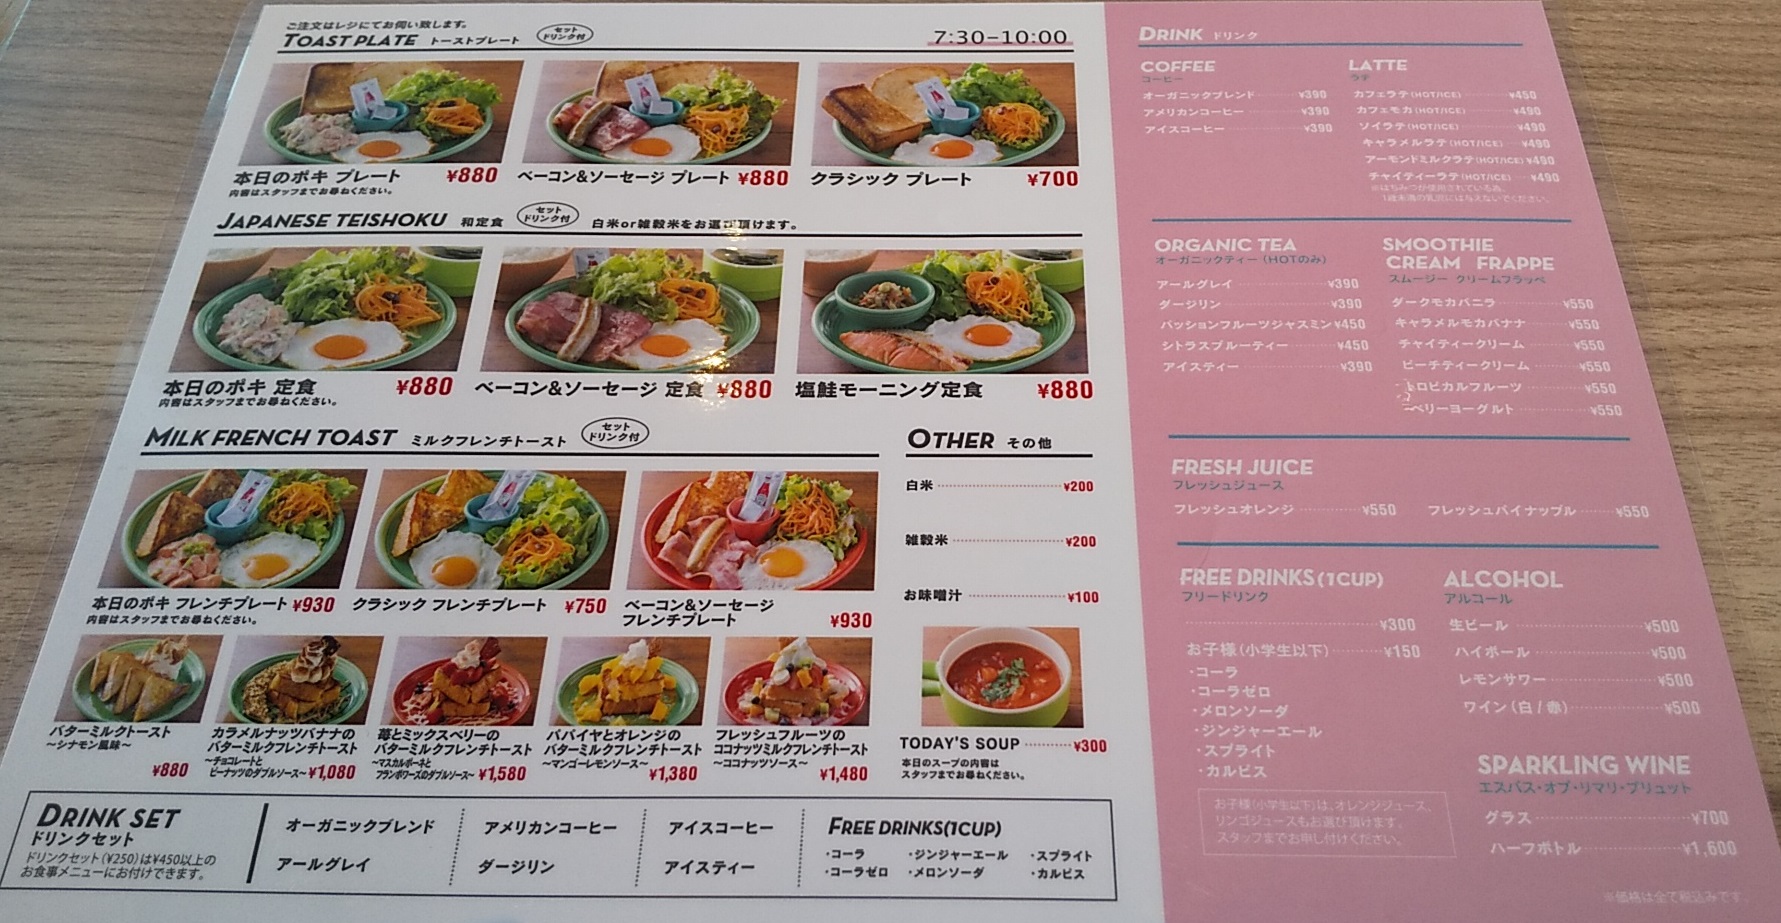 【優待ご飯】コロワイド(7616) 「 MM MARKET & CAFEみなとみらい店」で「海老とお野菜の海鮮パッタイ」を食べてきました♪